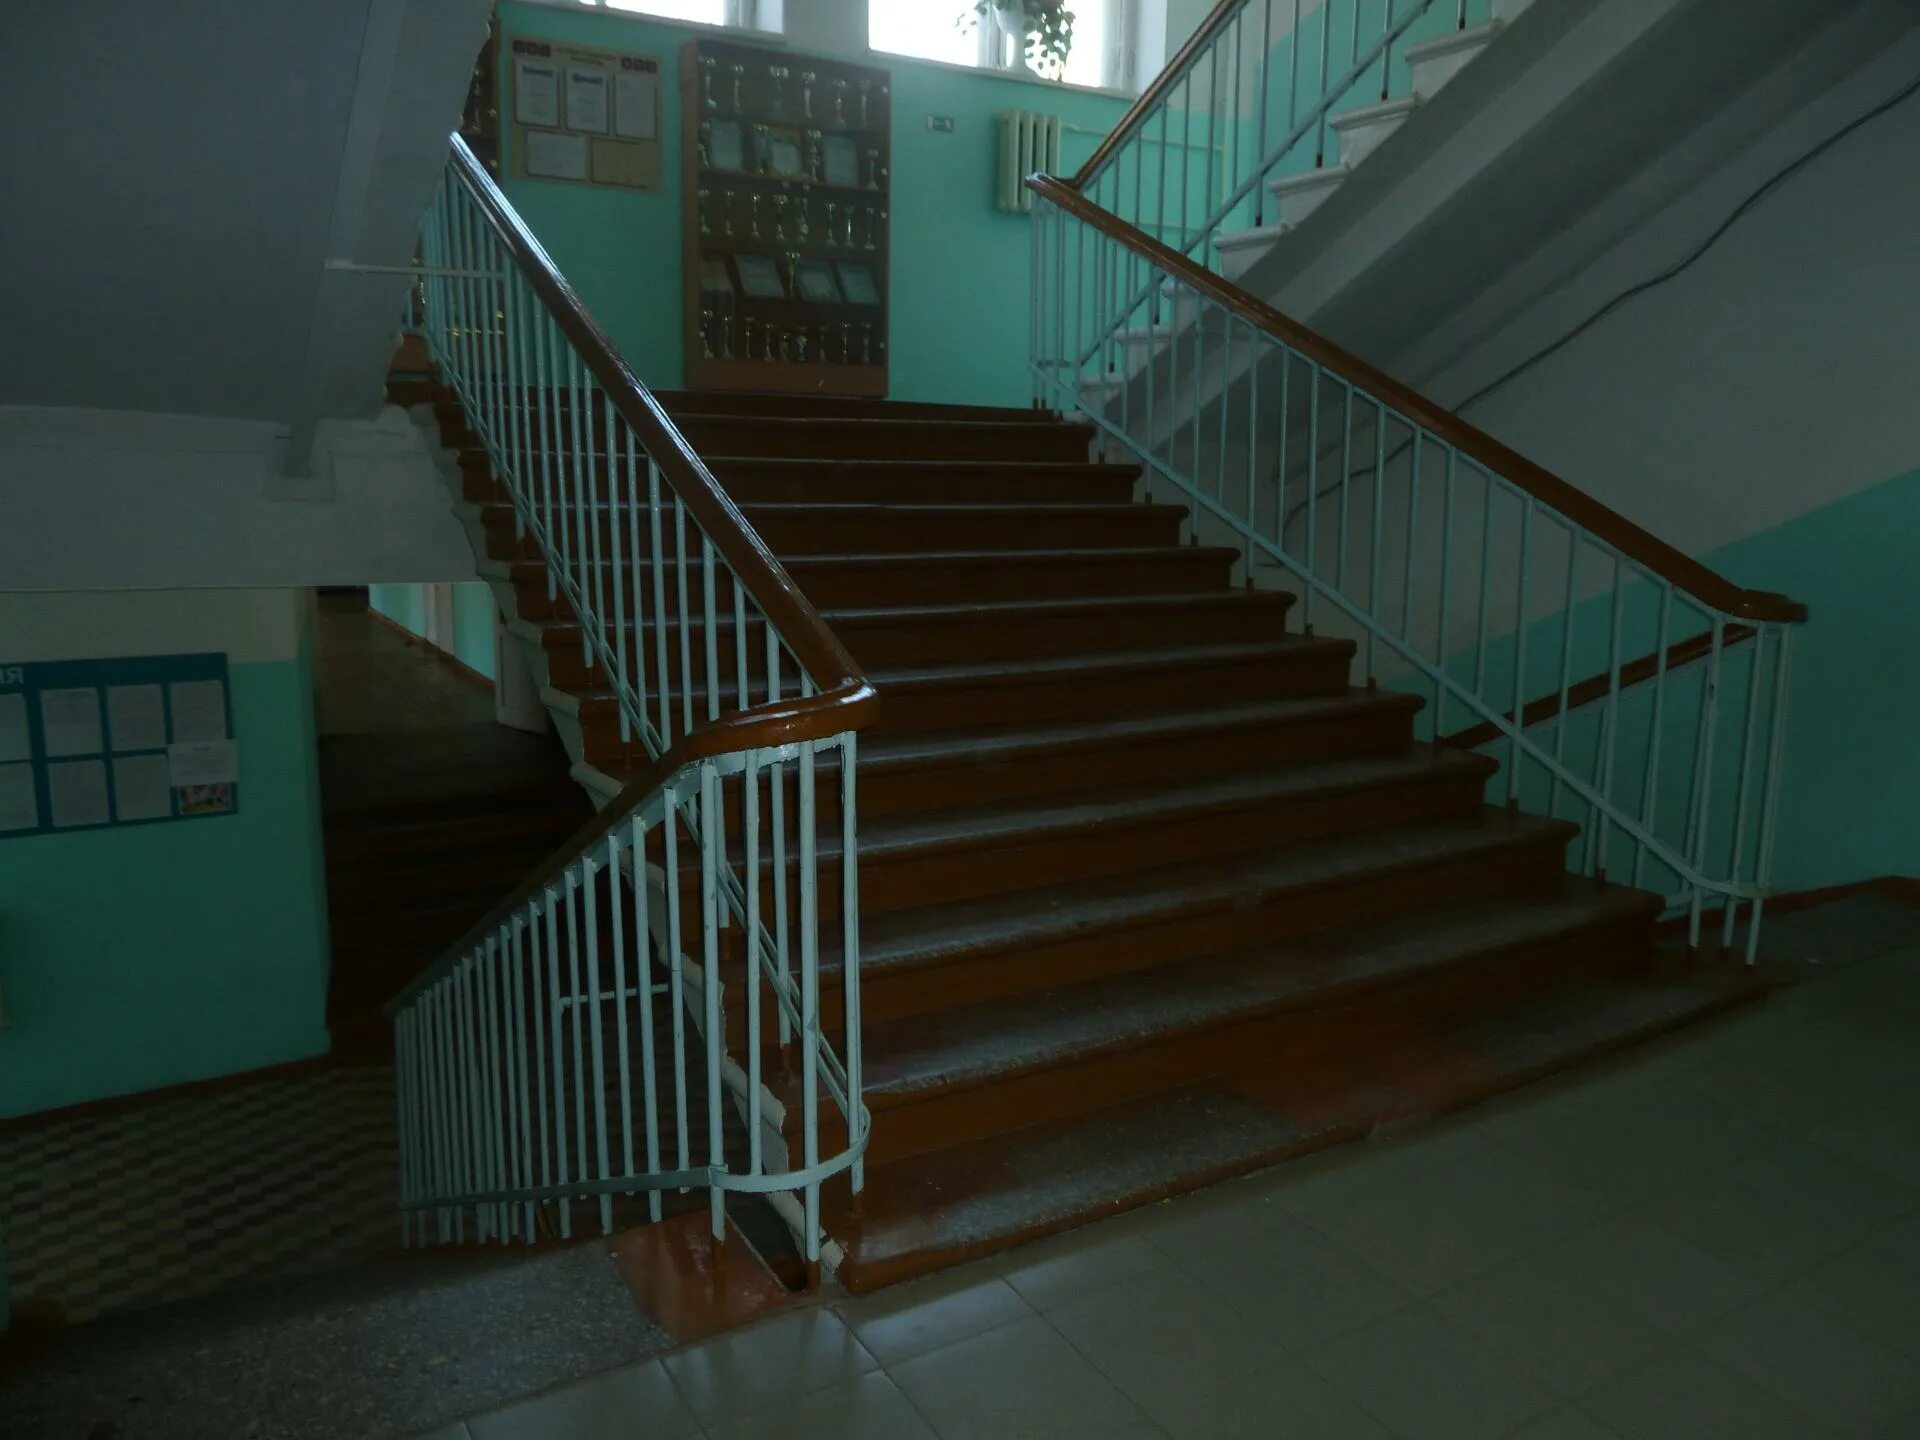 Второй этаж в школе. Лестница в школе. Лестница в школе Старая. Школа внутри лестница. Лестница в образовательном учреждении.